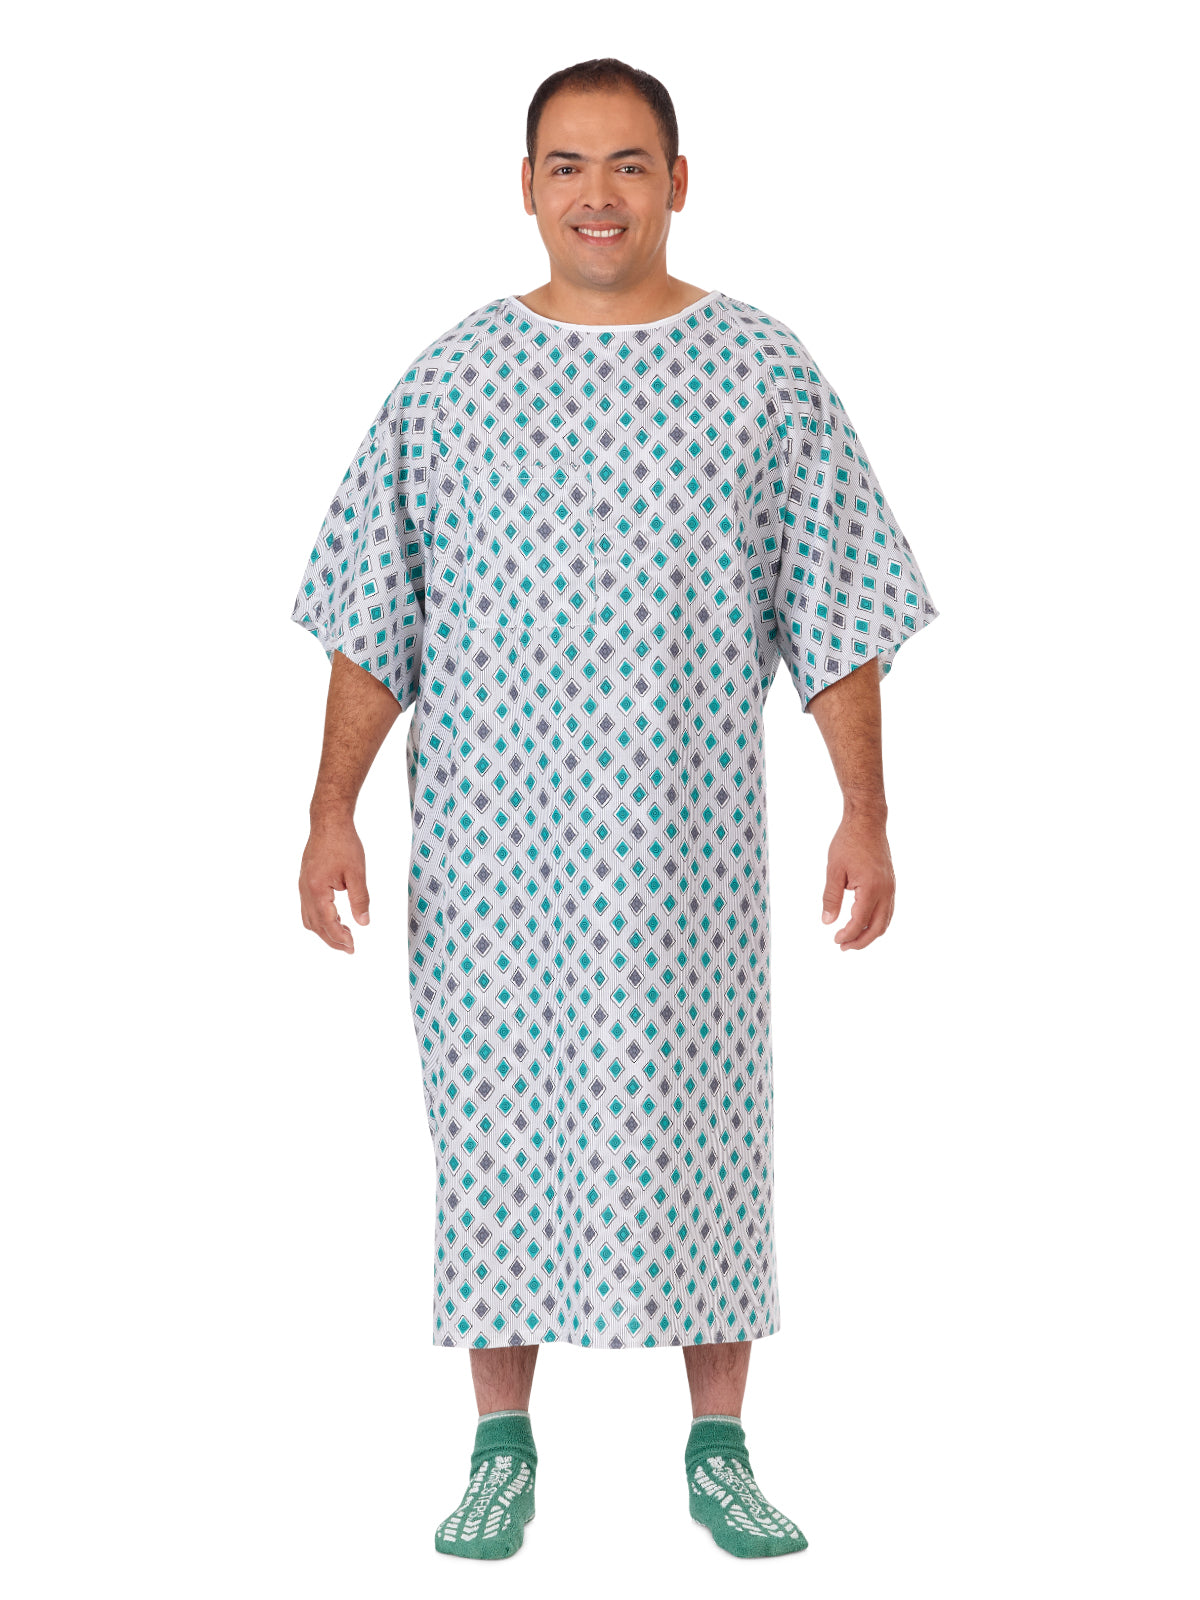 Unisex Patient Gown - 45269 - Blue/Cactus Atlantis